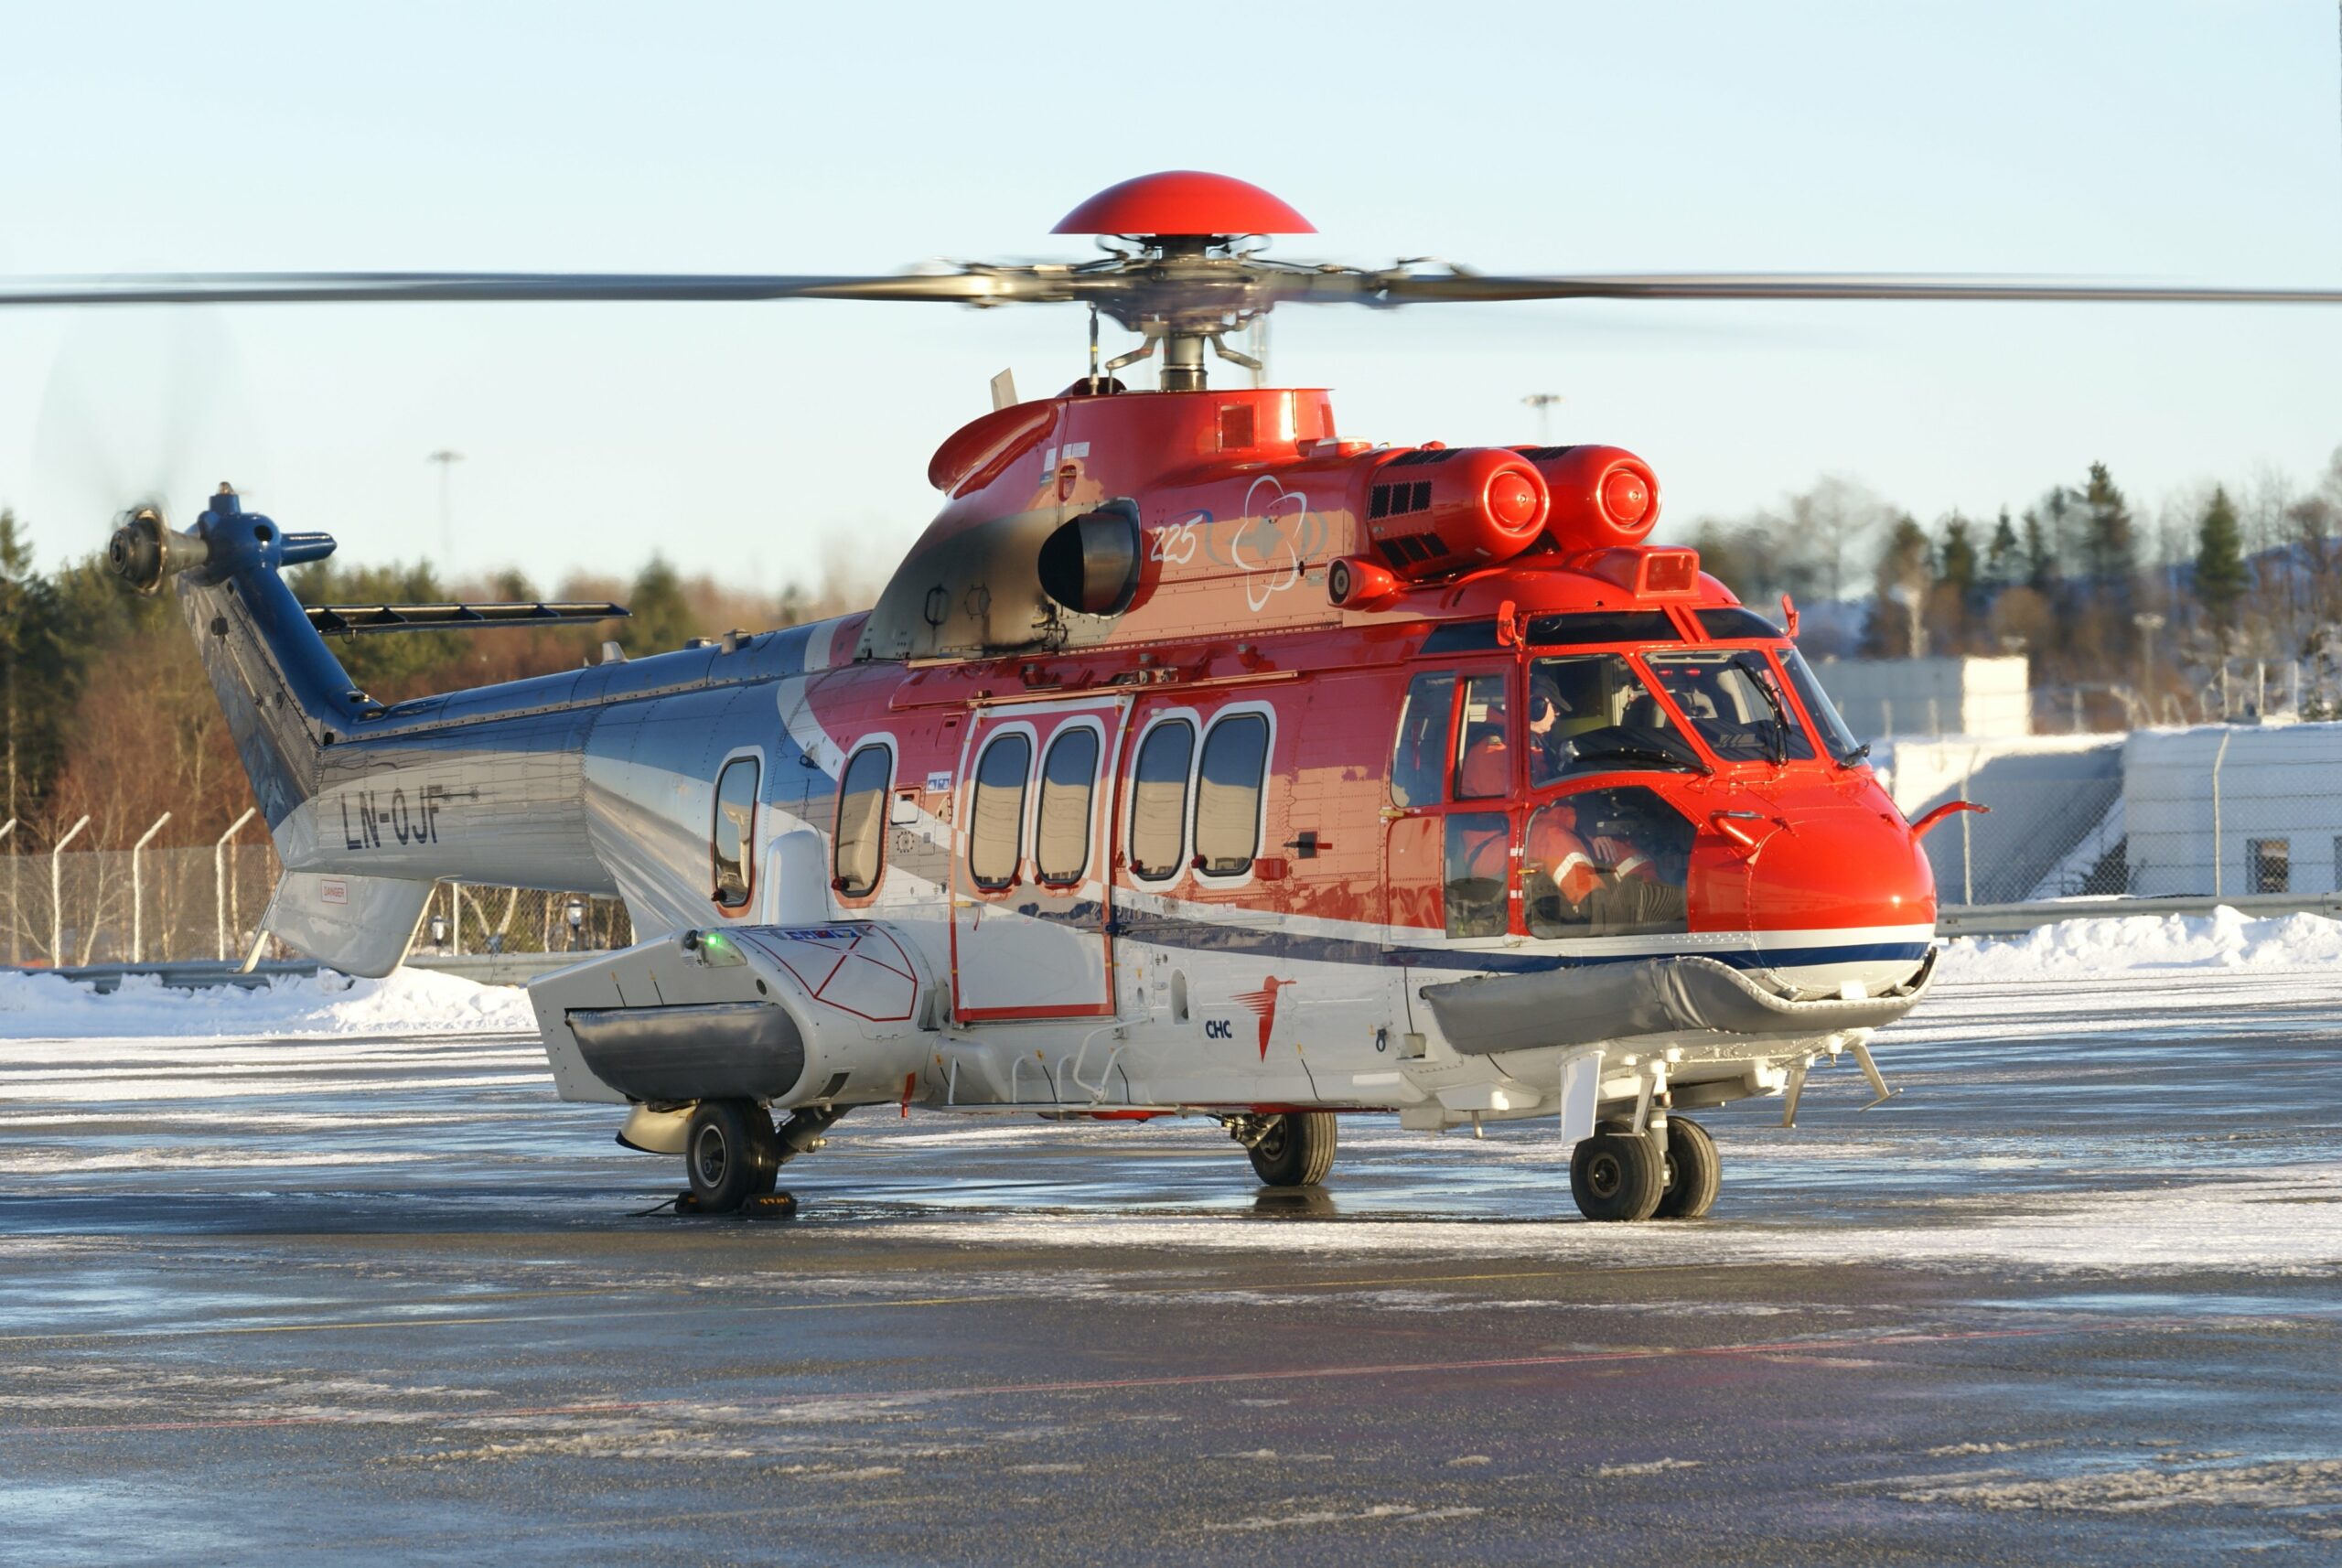 Det var et Super Puma EC225 (bildet) som styrtet ved Turøy 29. april i fjor.